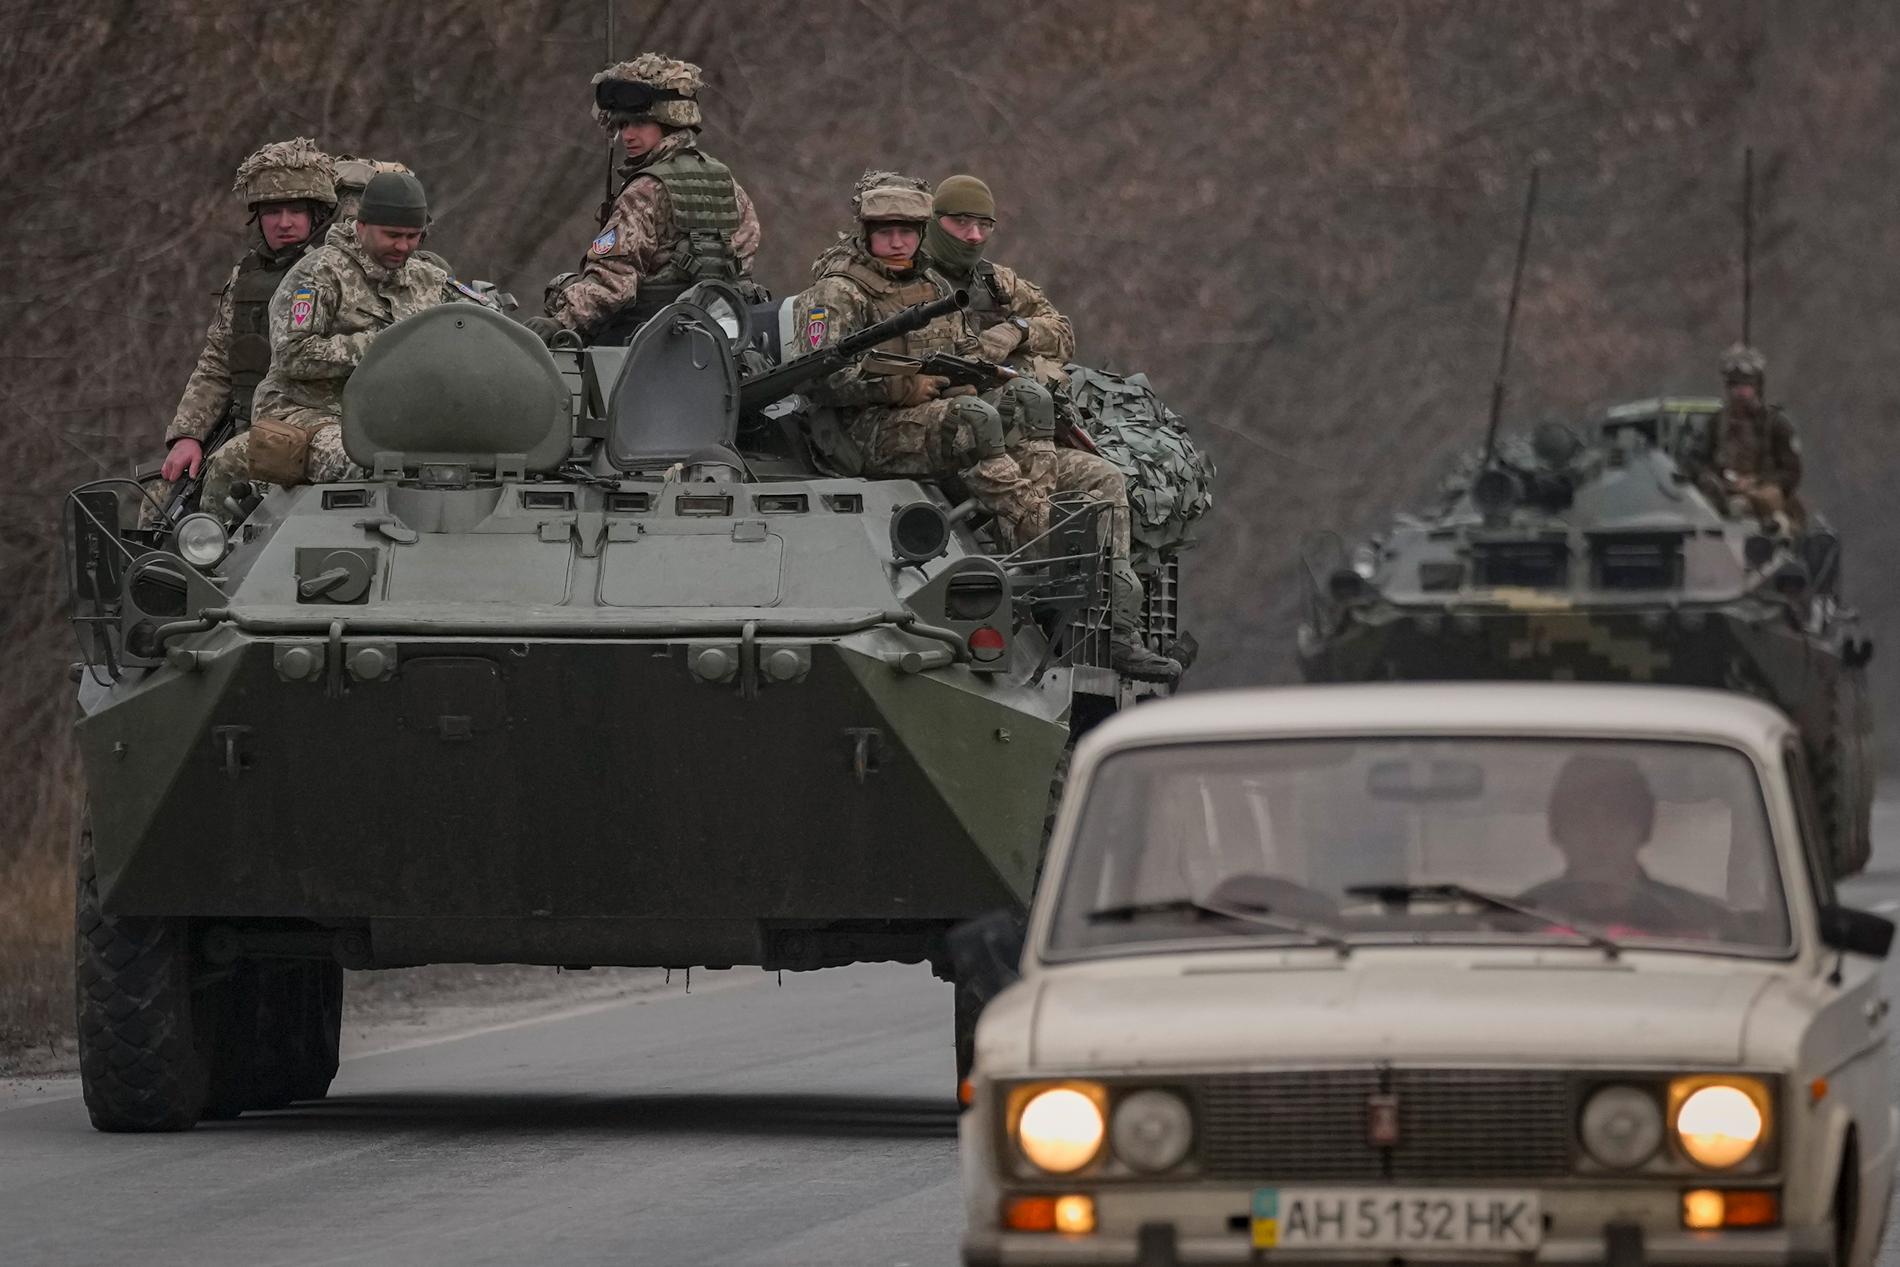 Personbilar och stridsvagnar färdas på samma väg vid Donetsk i östra Ukraina.